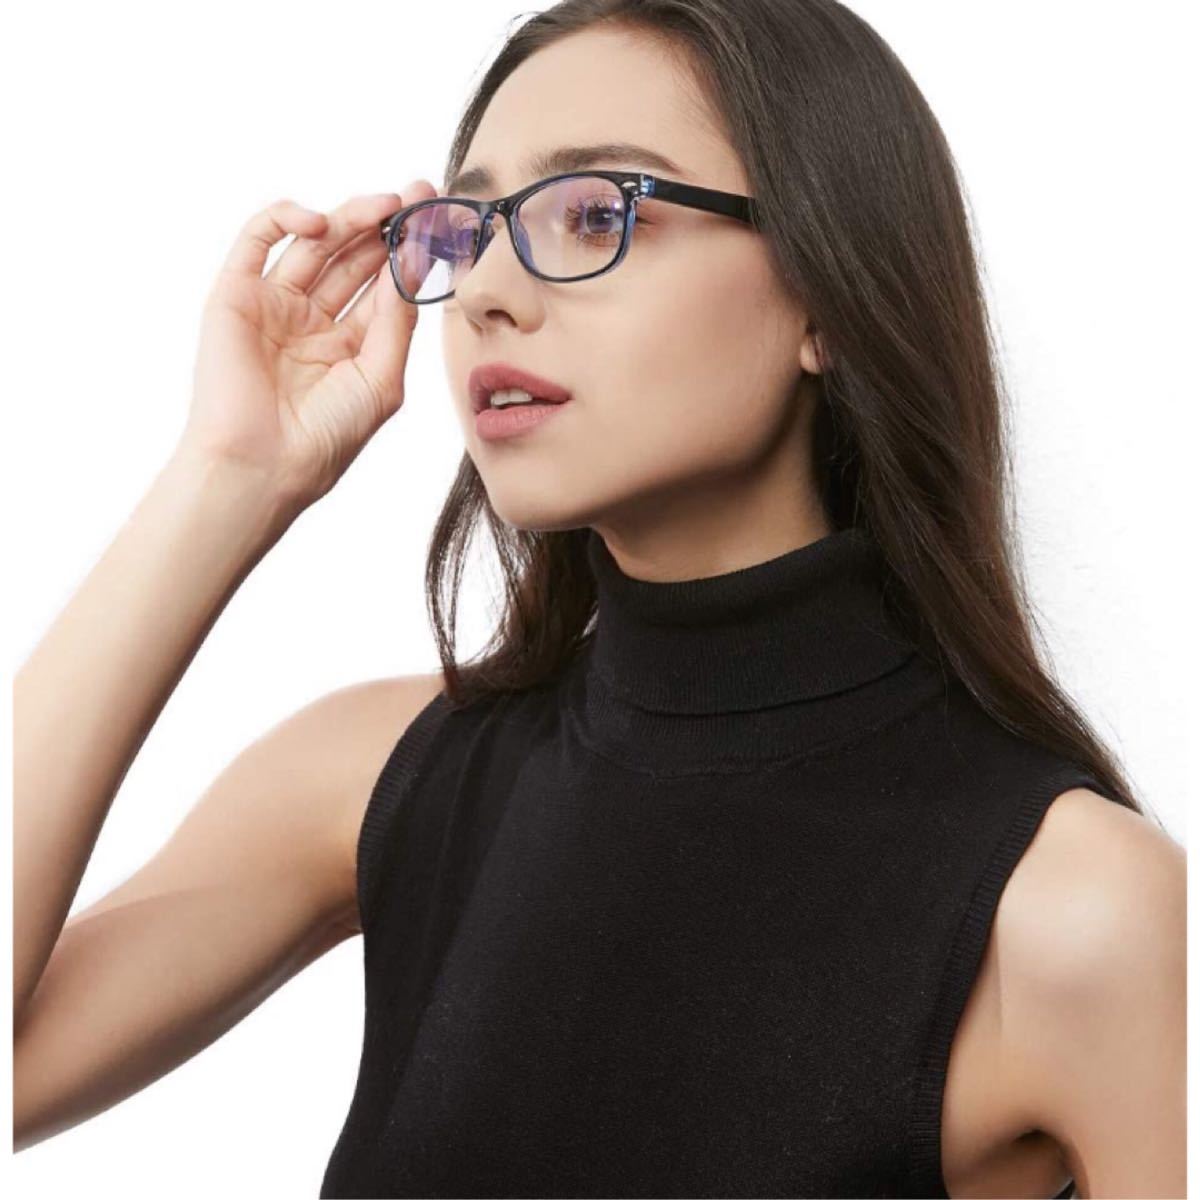 ブルーライトカット メガネ超軽量ブルーライトグラスUVカット 紫外線カット 輻射防止 視力保護 睡眠改善 目の疲れを緩和する男女兼用